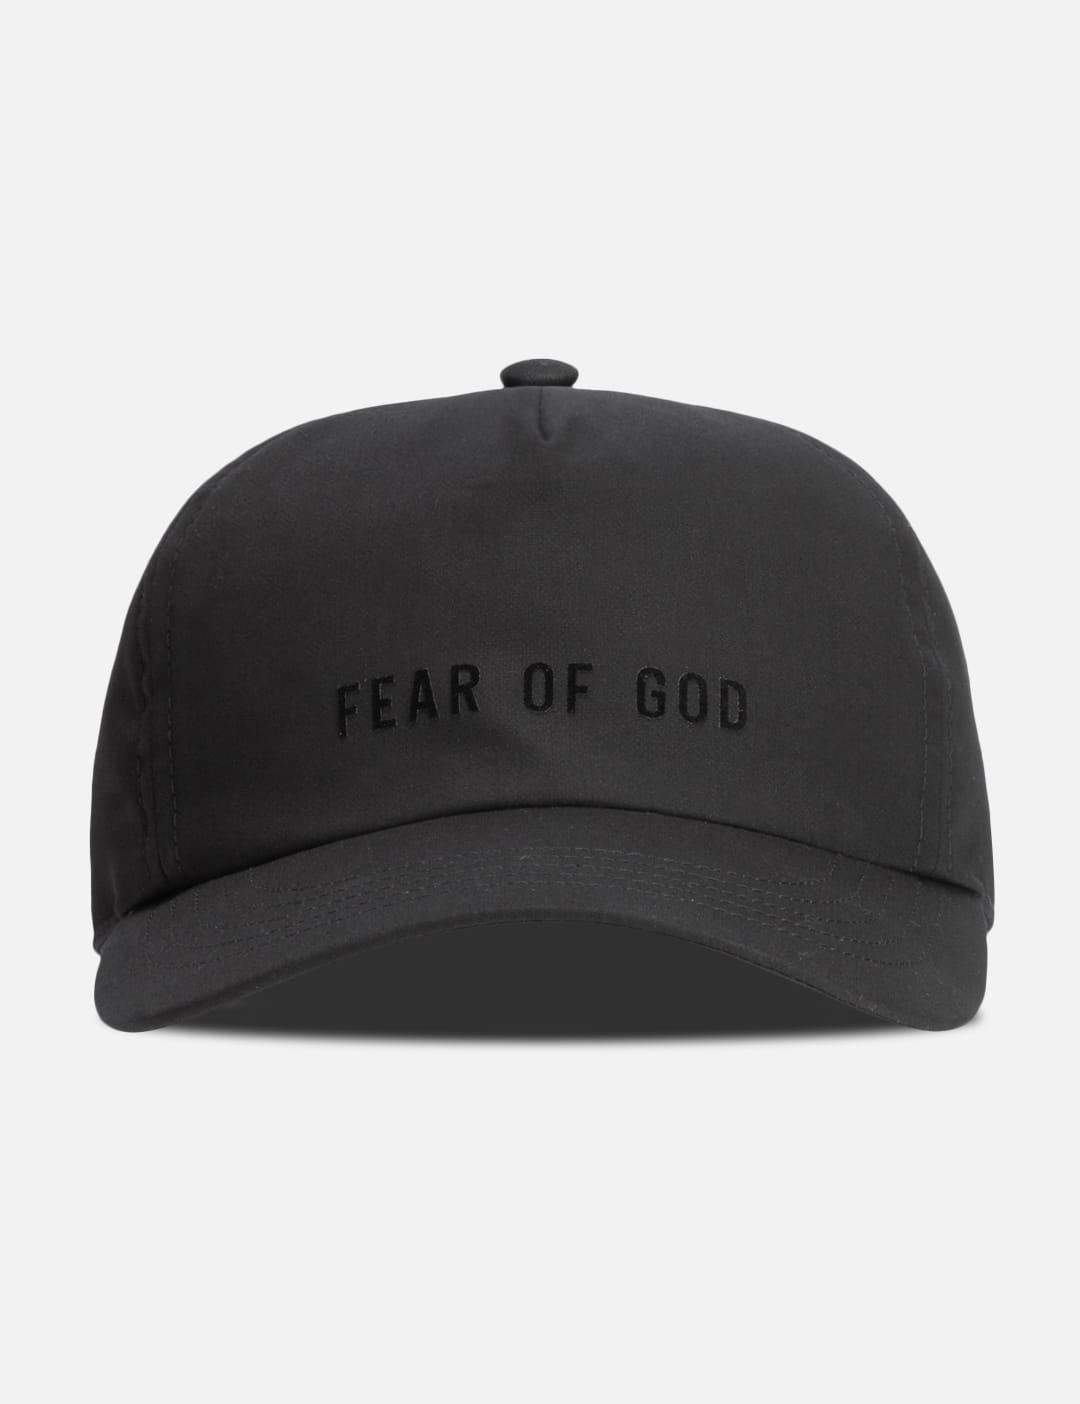 피어 오브 갓 피오갓 볼캡 모자 Fear of God Eternal Cotton Hat